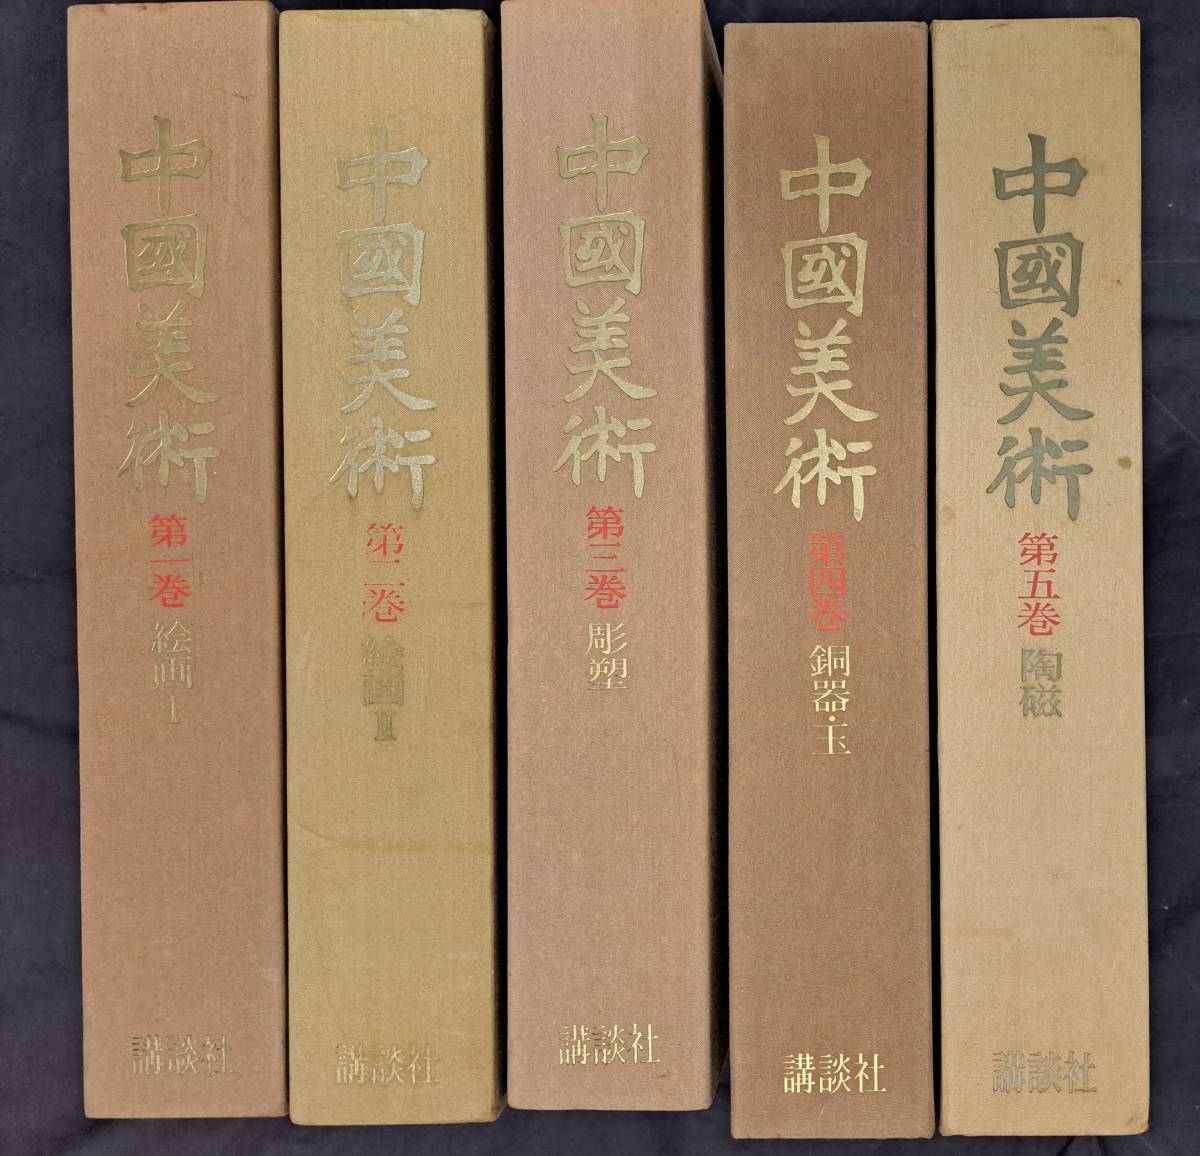 चीनी कला खंड 1 से 5 (3000 प्रतियों तक सीमित) कोडनशा पेंटिंग I, चित्रकारी द्वितीय, मूर्ति, कॉपर जेड, मिट्टी के पात्र, किताब, पत्रिका, कला, मनोरंजन, कला, कला इतिहास